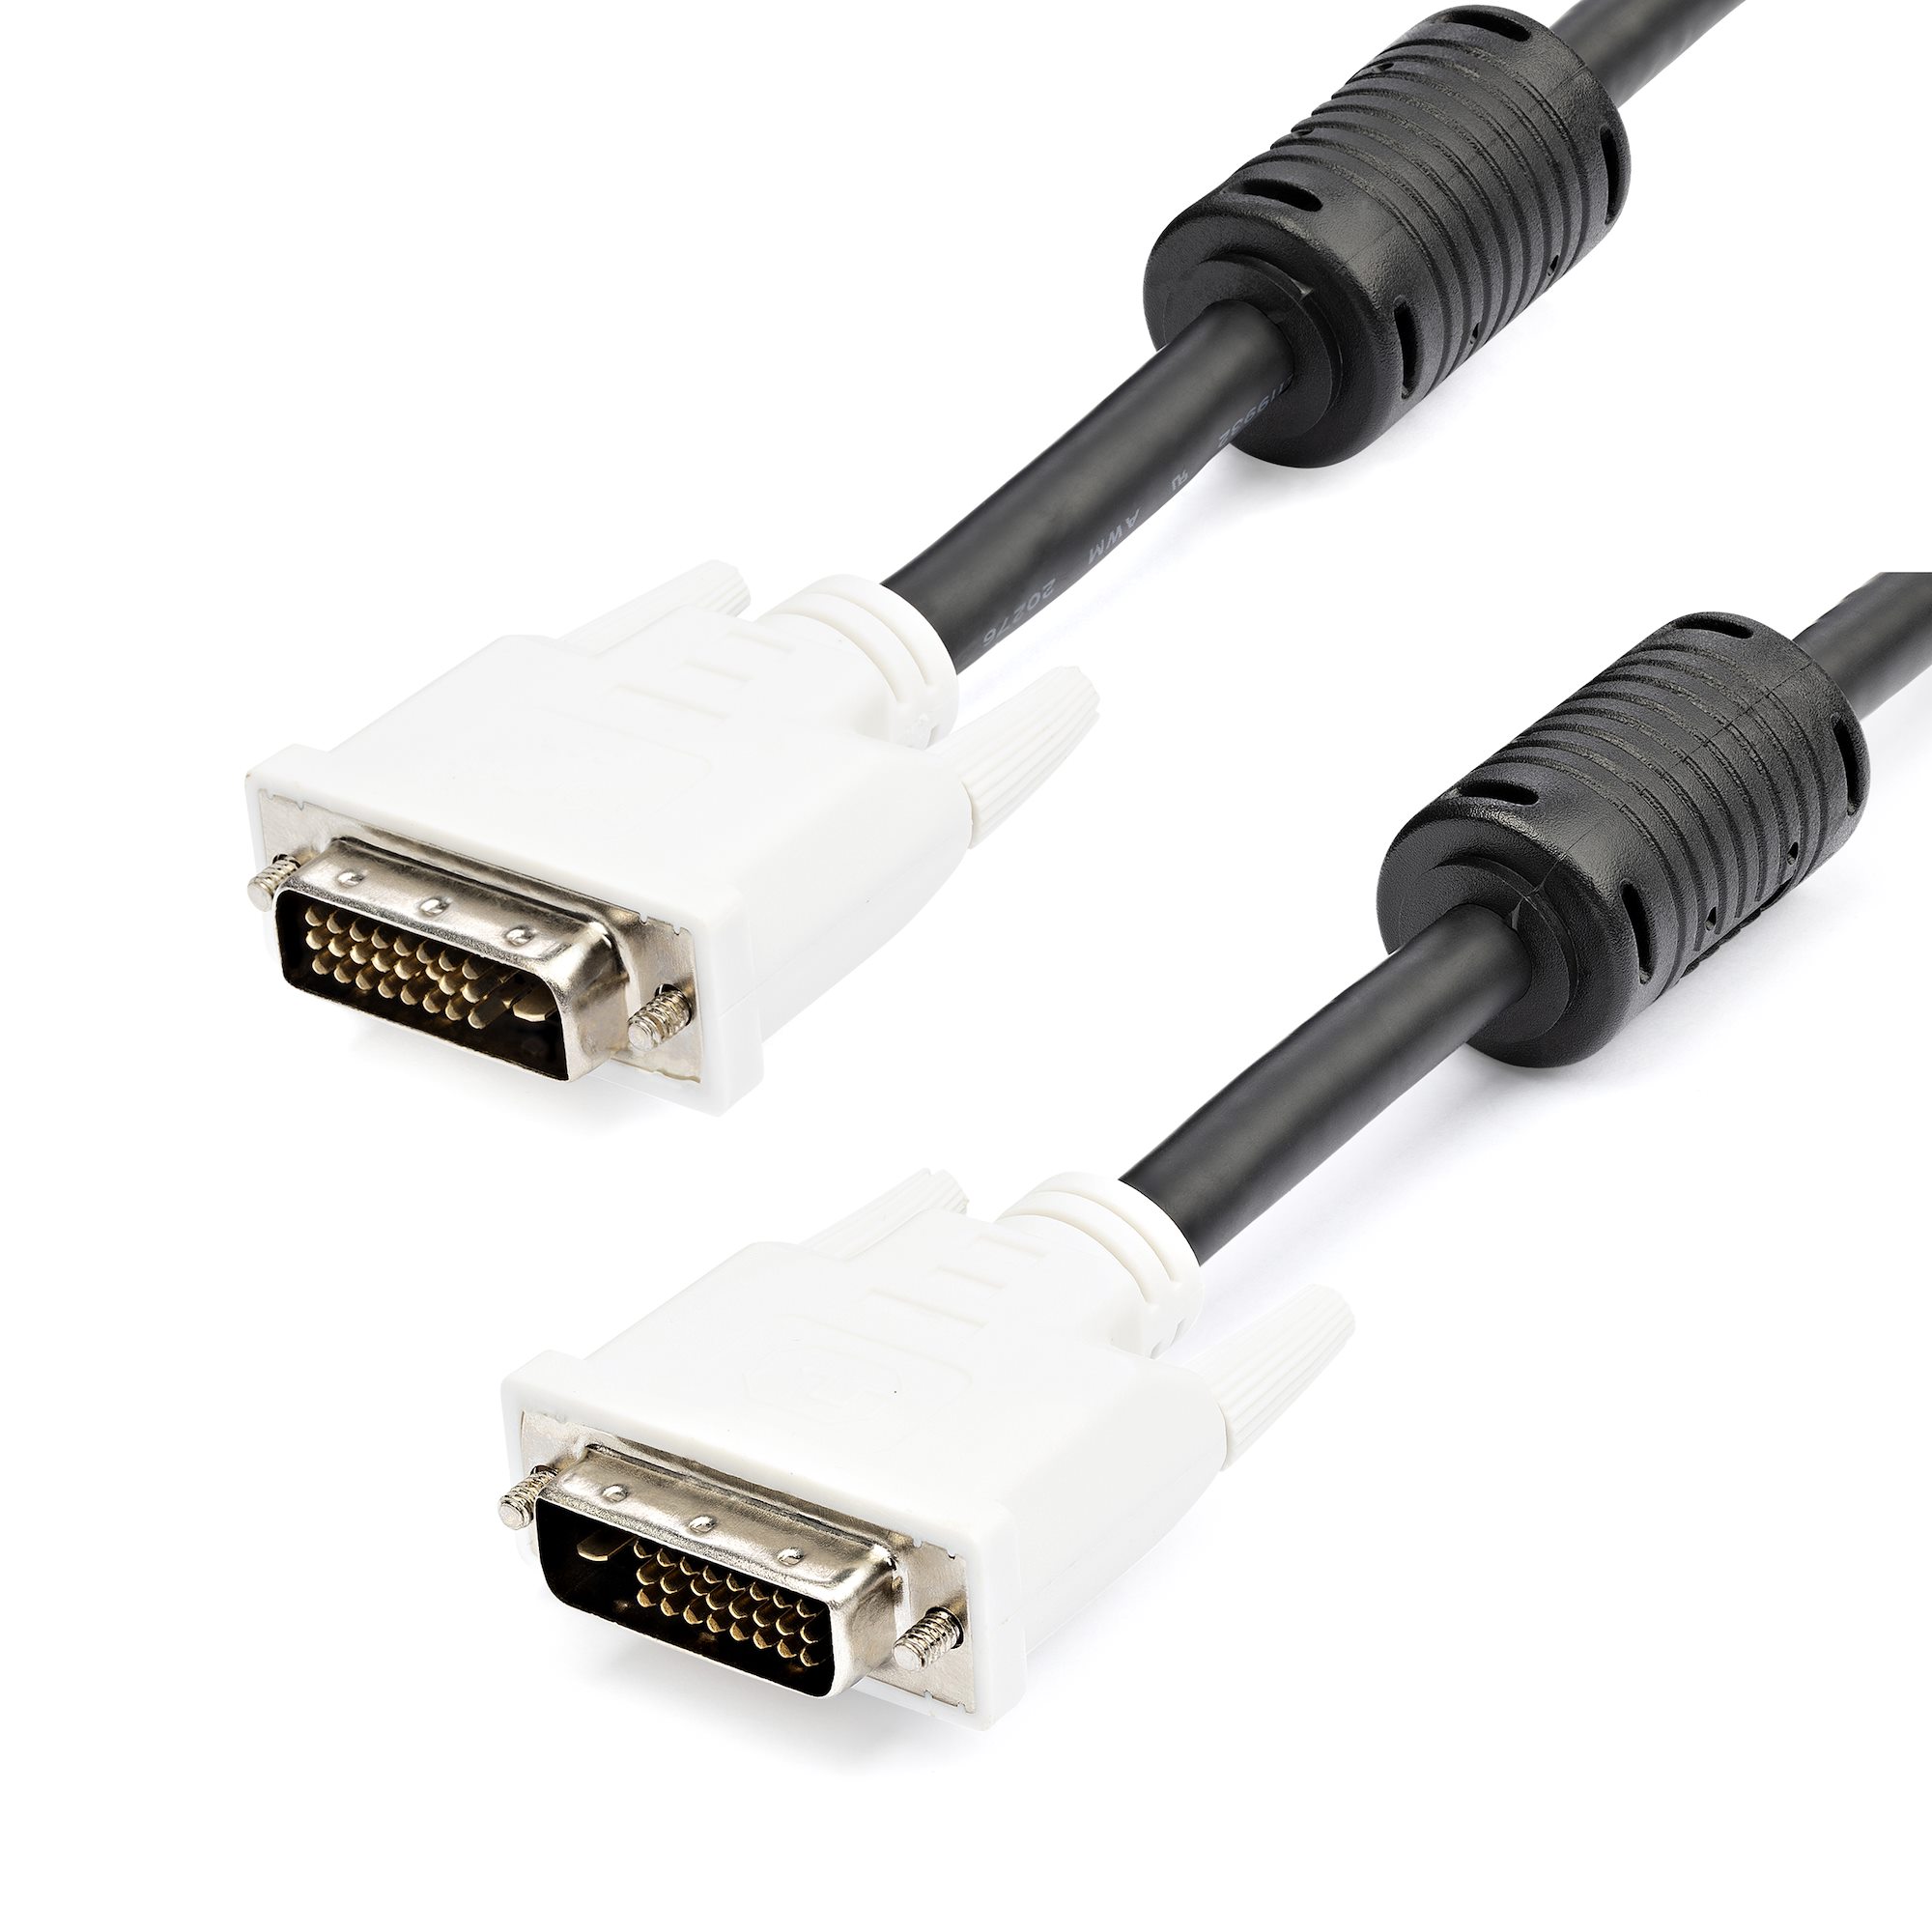 pouch band Bliv klar 3 ft DVI-D Dual Link Cable - M/M - DVI Cables | StarTech.com